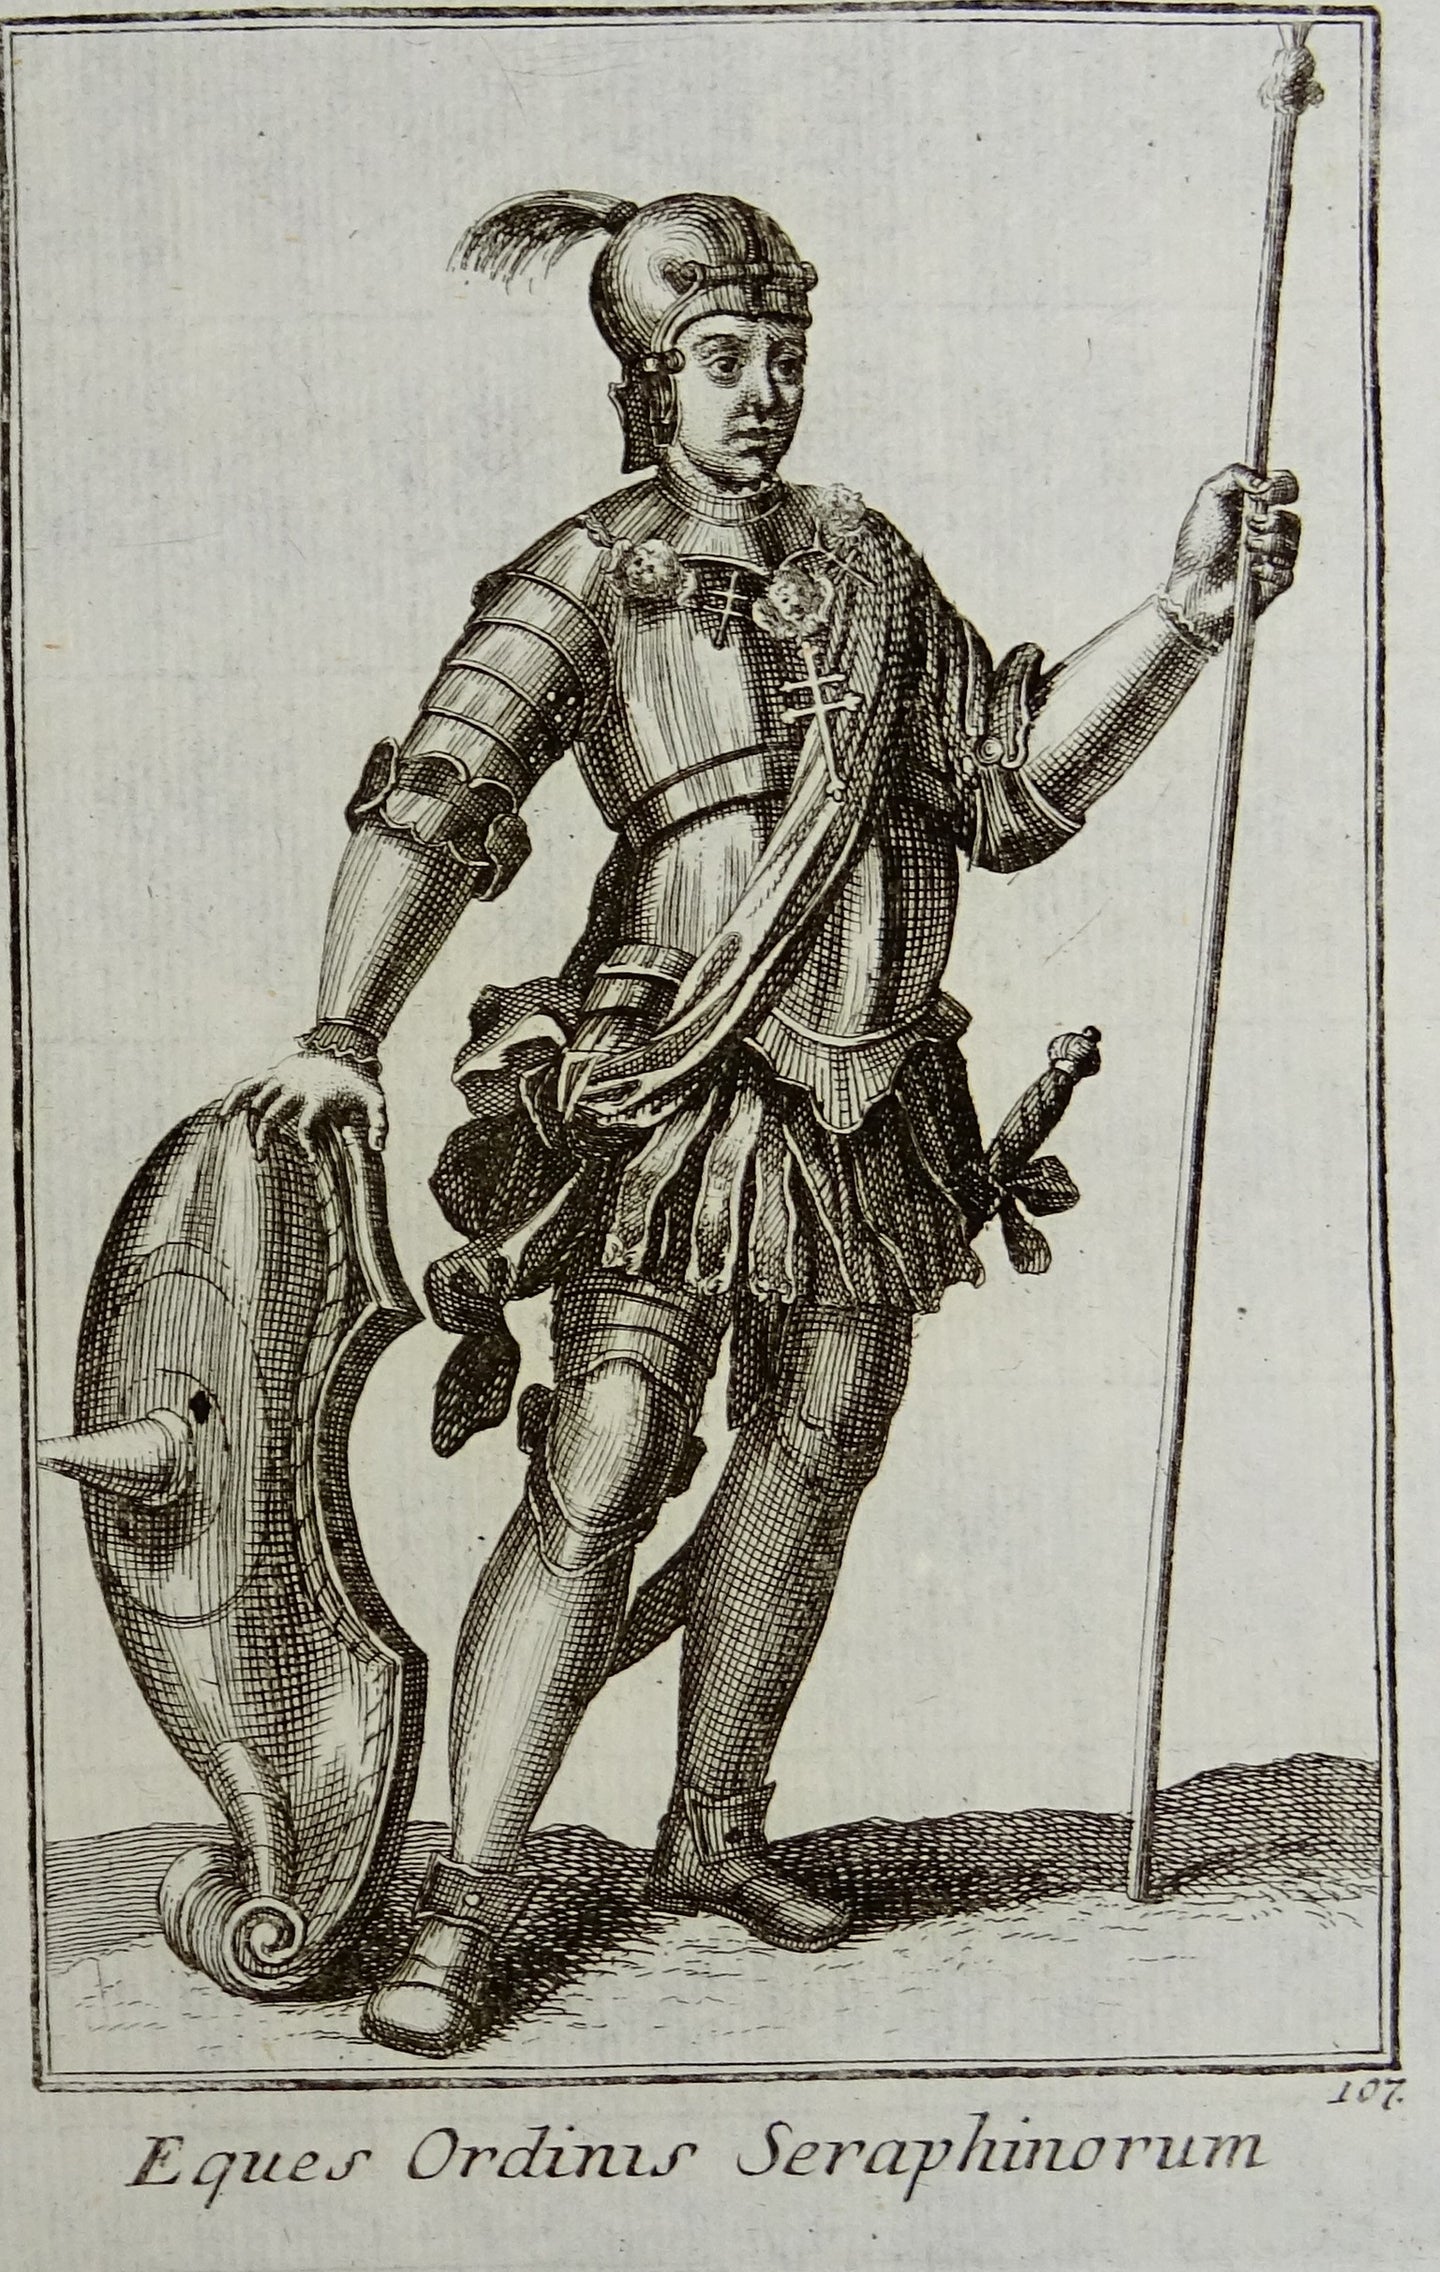 Eques Ordinis Seraphinorum - Ordinum equestrium et militarium - ca 1711